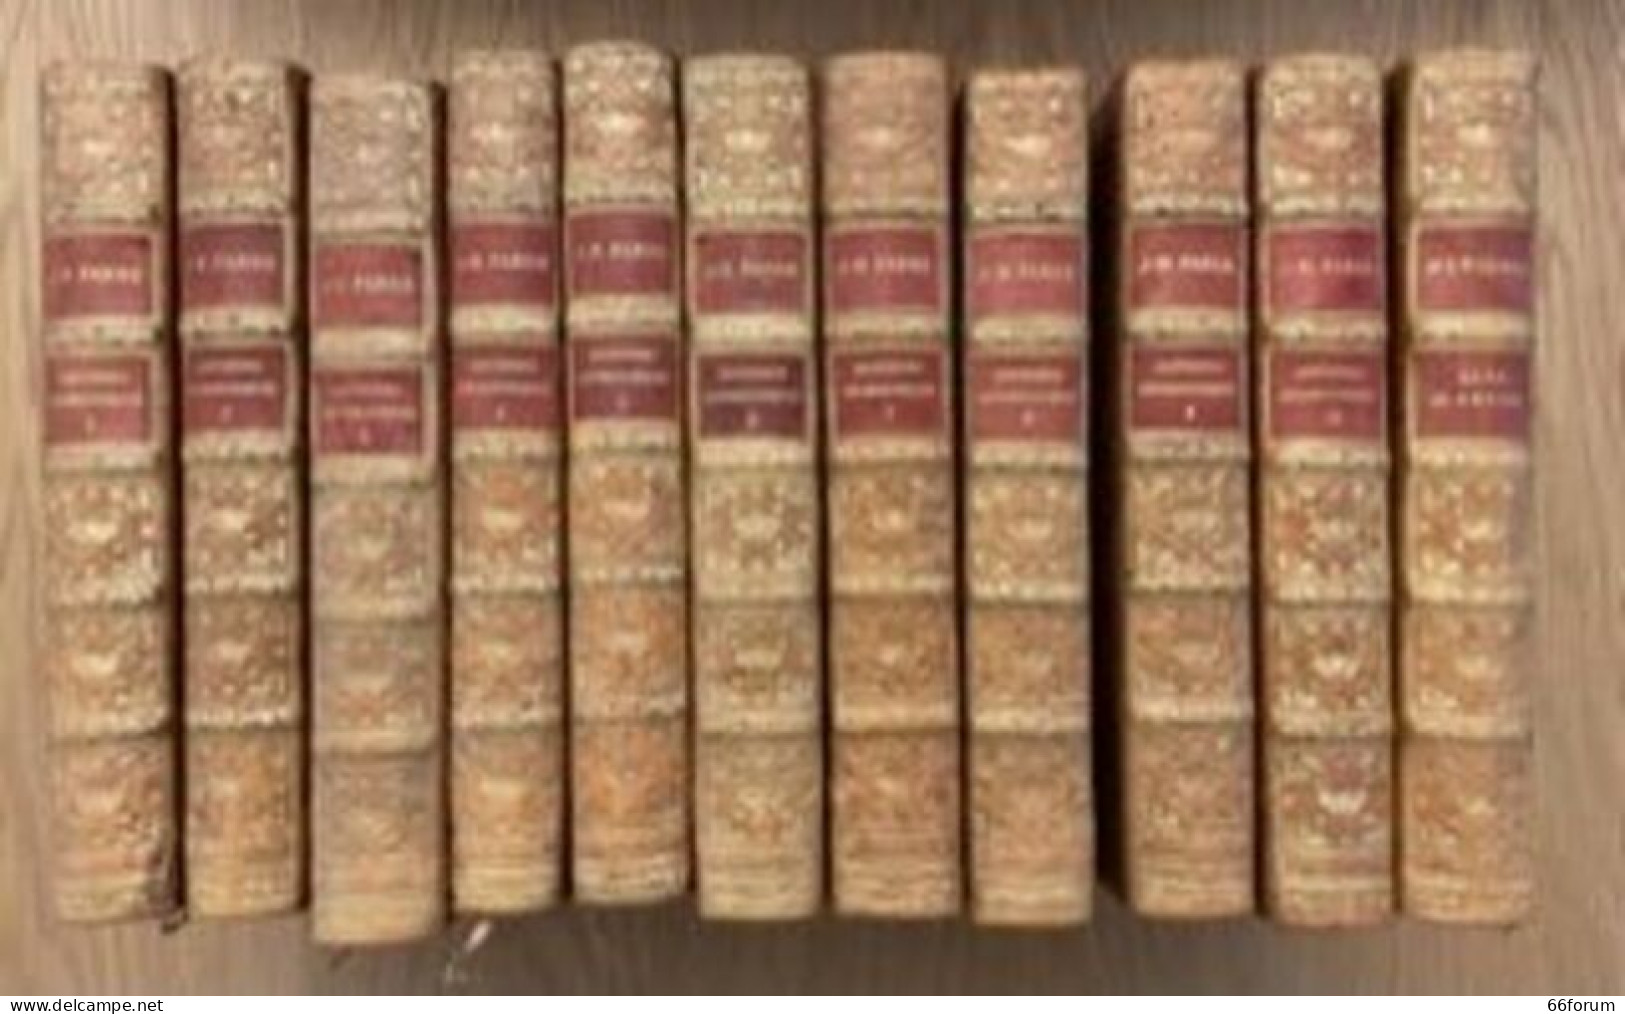 Souvenirs Entomologiques En 10 Volumes édition Définitive Illustrée Suivi De La Vie De J.-H. Fabre - History